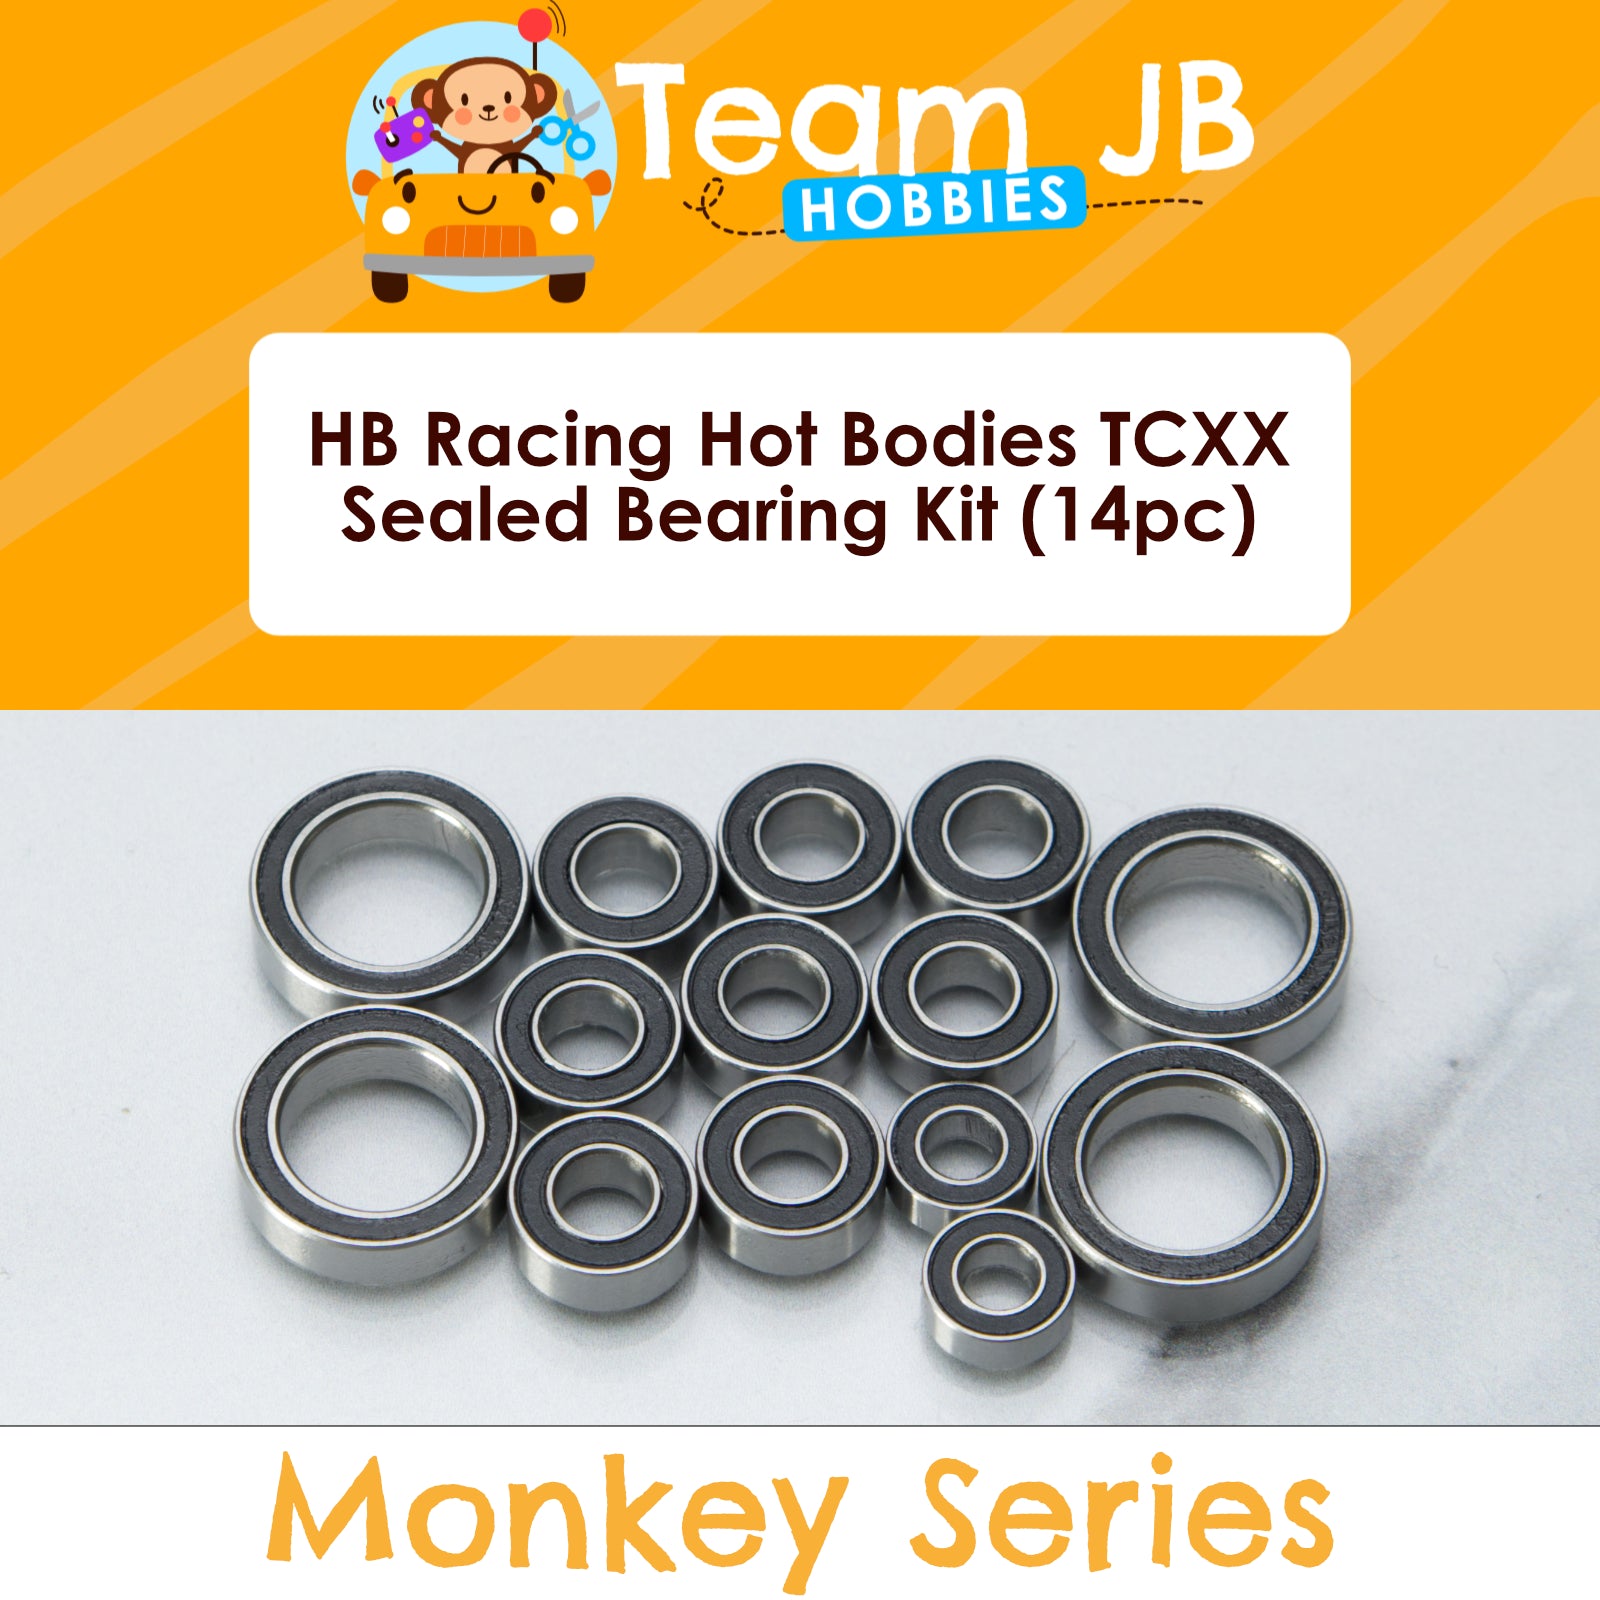 HB Racing Hot Bodies TCXX - Sealed Bearing Kit